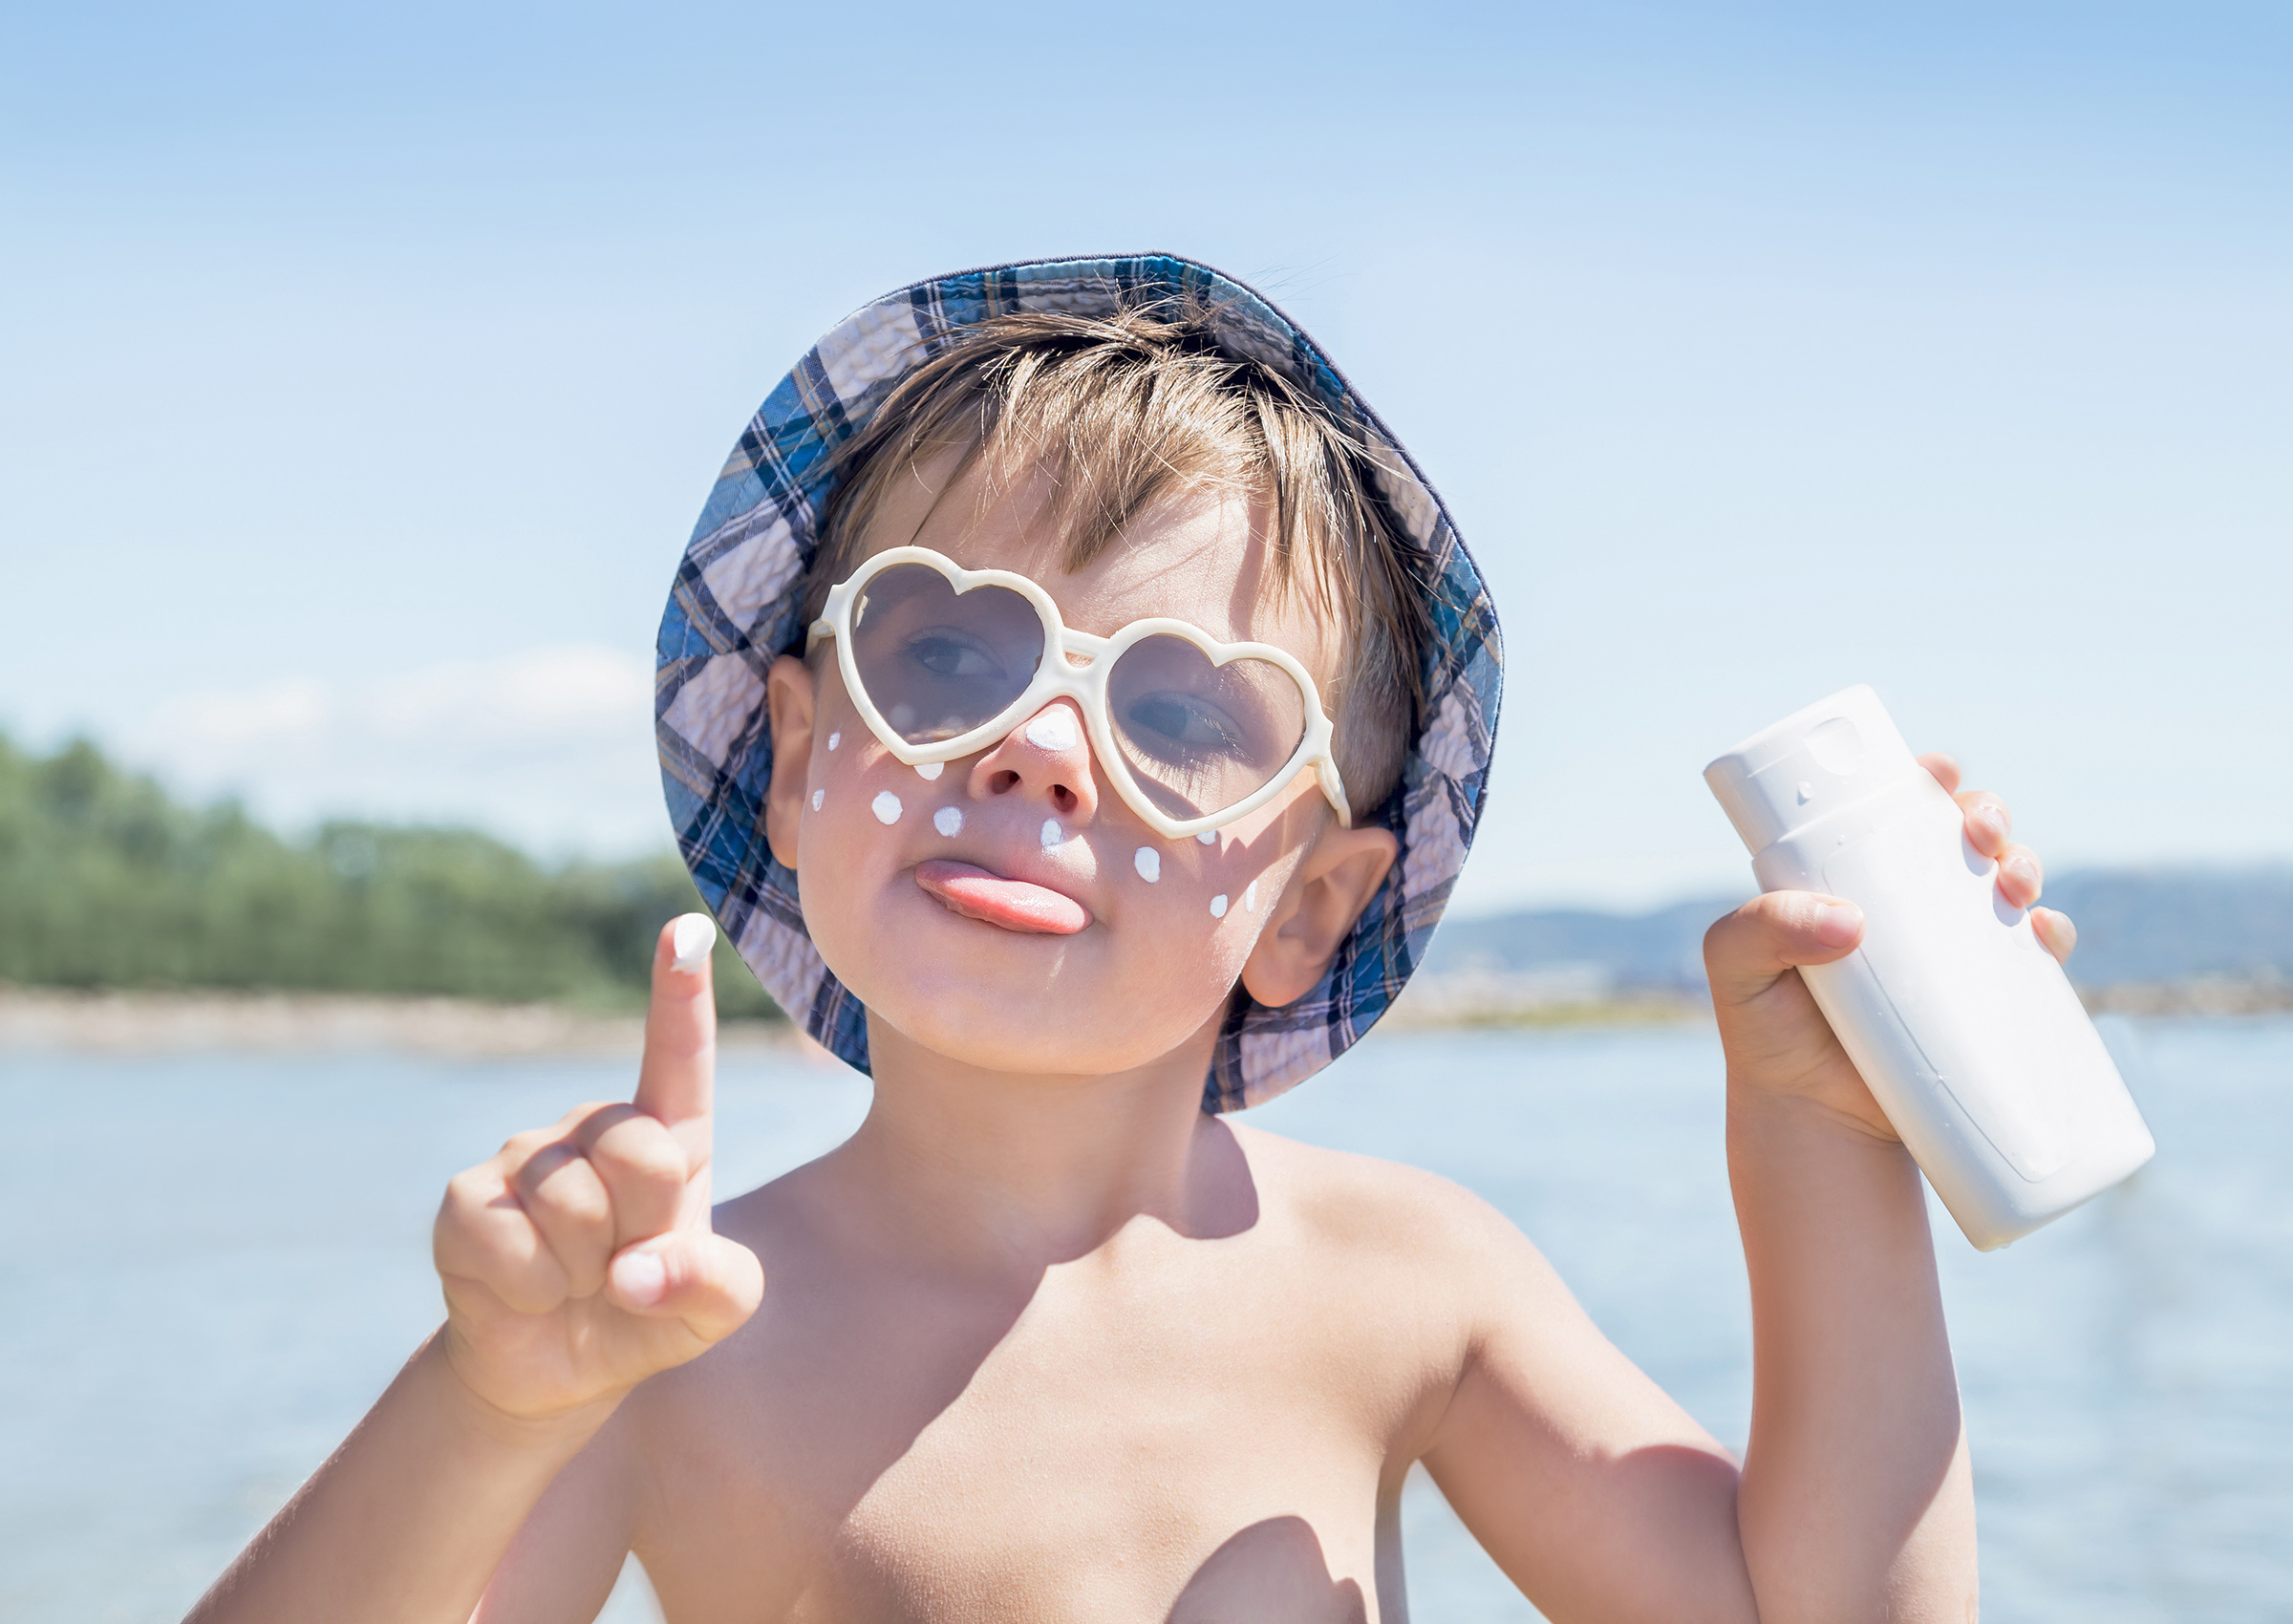 Un enfant portant un chapeau et des lunettes de soleil utilise de la crème solaire.